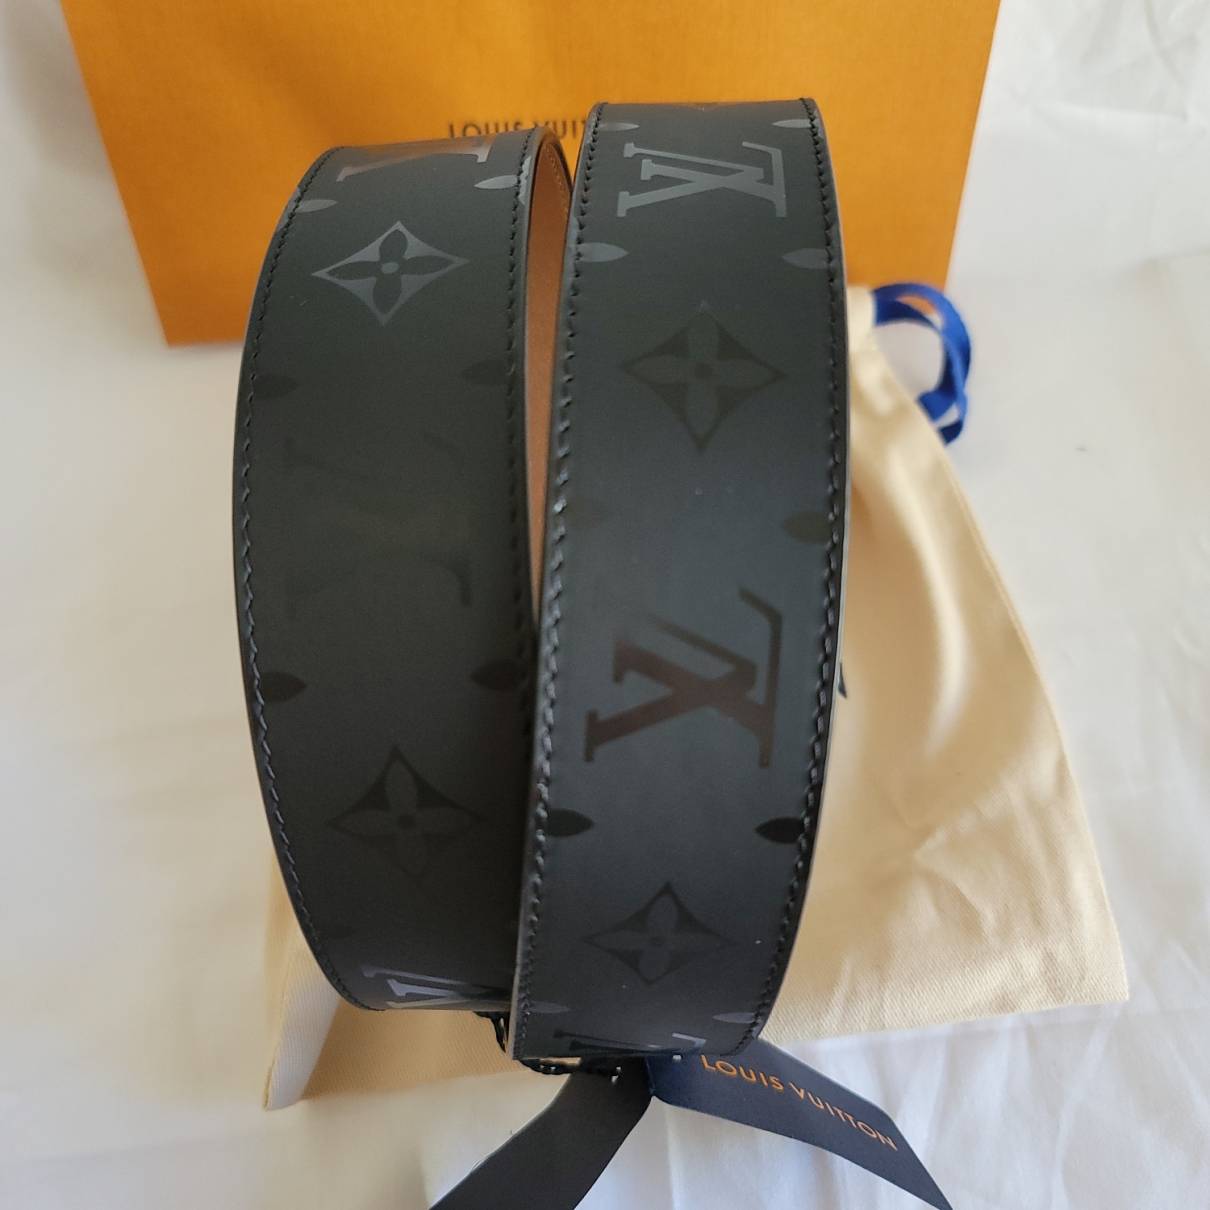 Belt Louis Vuitton Black size Not specified International in Not